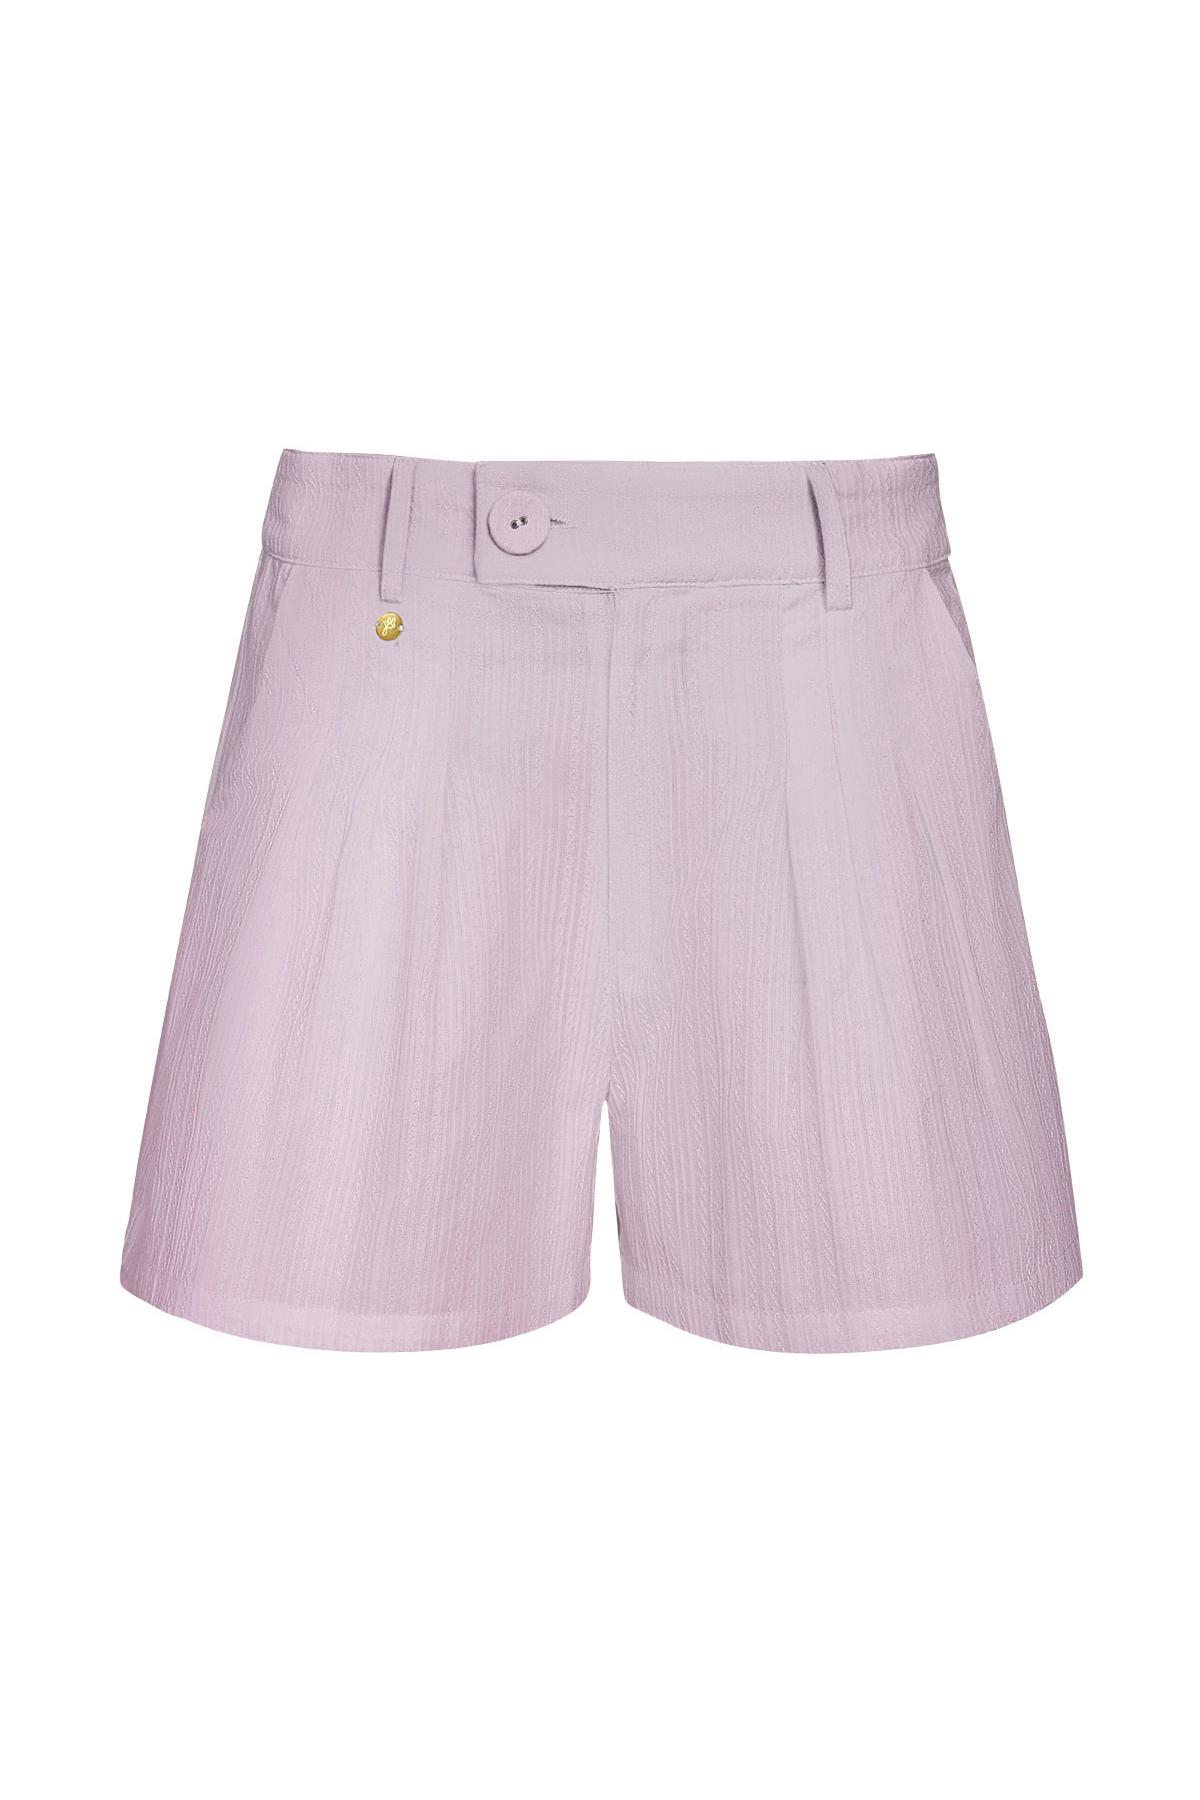 Dettaglio bottoni pantaloncini - lilla Lilac S 